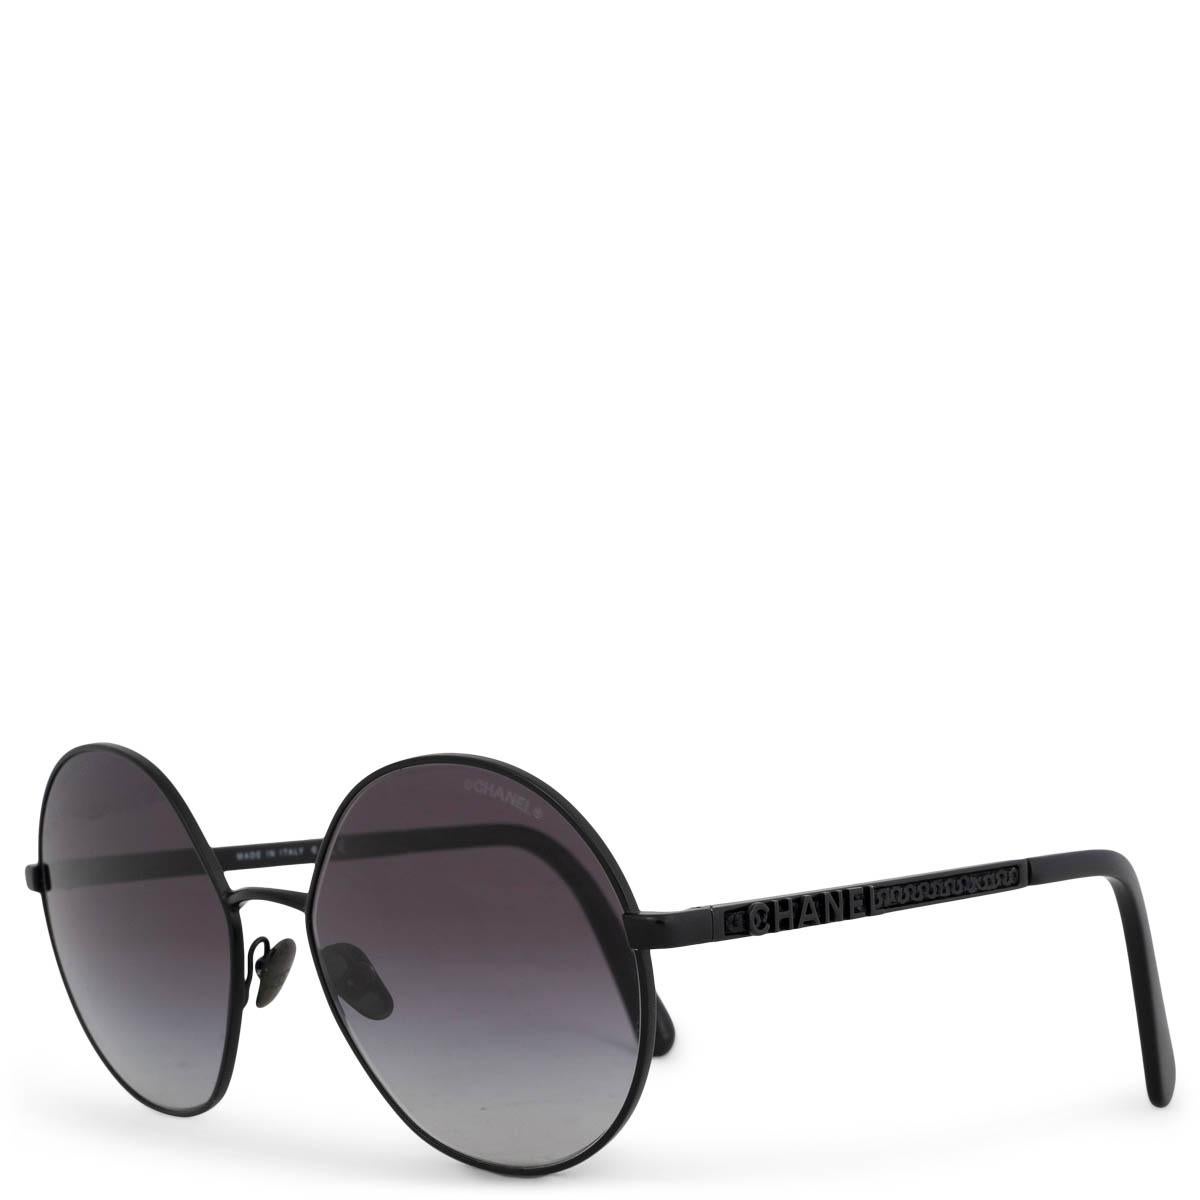 100% echte Chanel 4269 C.101/S6 ovale Sonnenbrille aus schwarzem Metall und Acetat mit grauen Verlaufsgläsern. Sie wurden getragen und sind in ausgezeichnetem Zustand. Kommt mit Etui. 

Messungen
Modell	Chanel 4269 C.101/S6
Breite	13cm